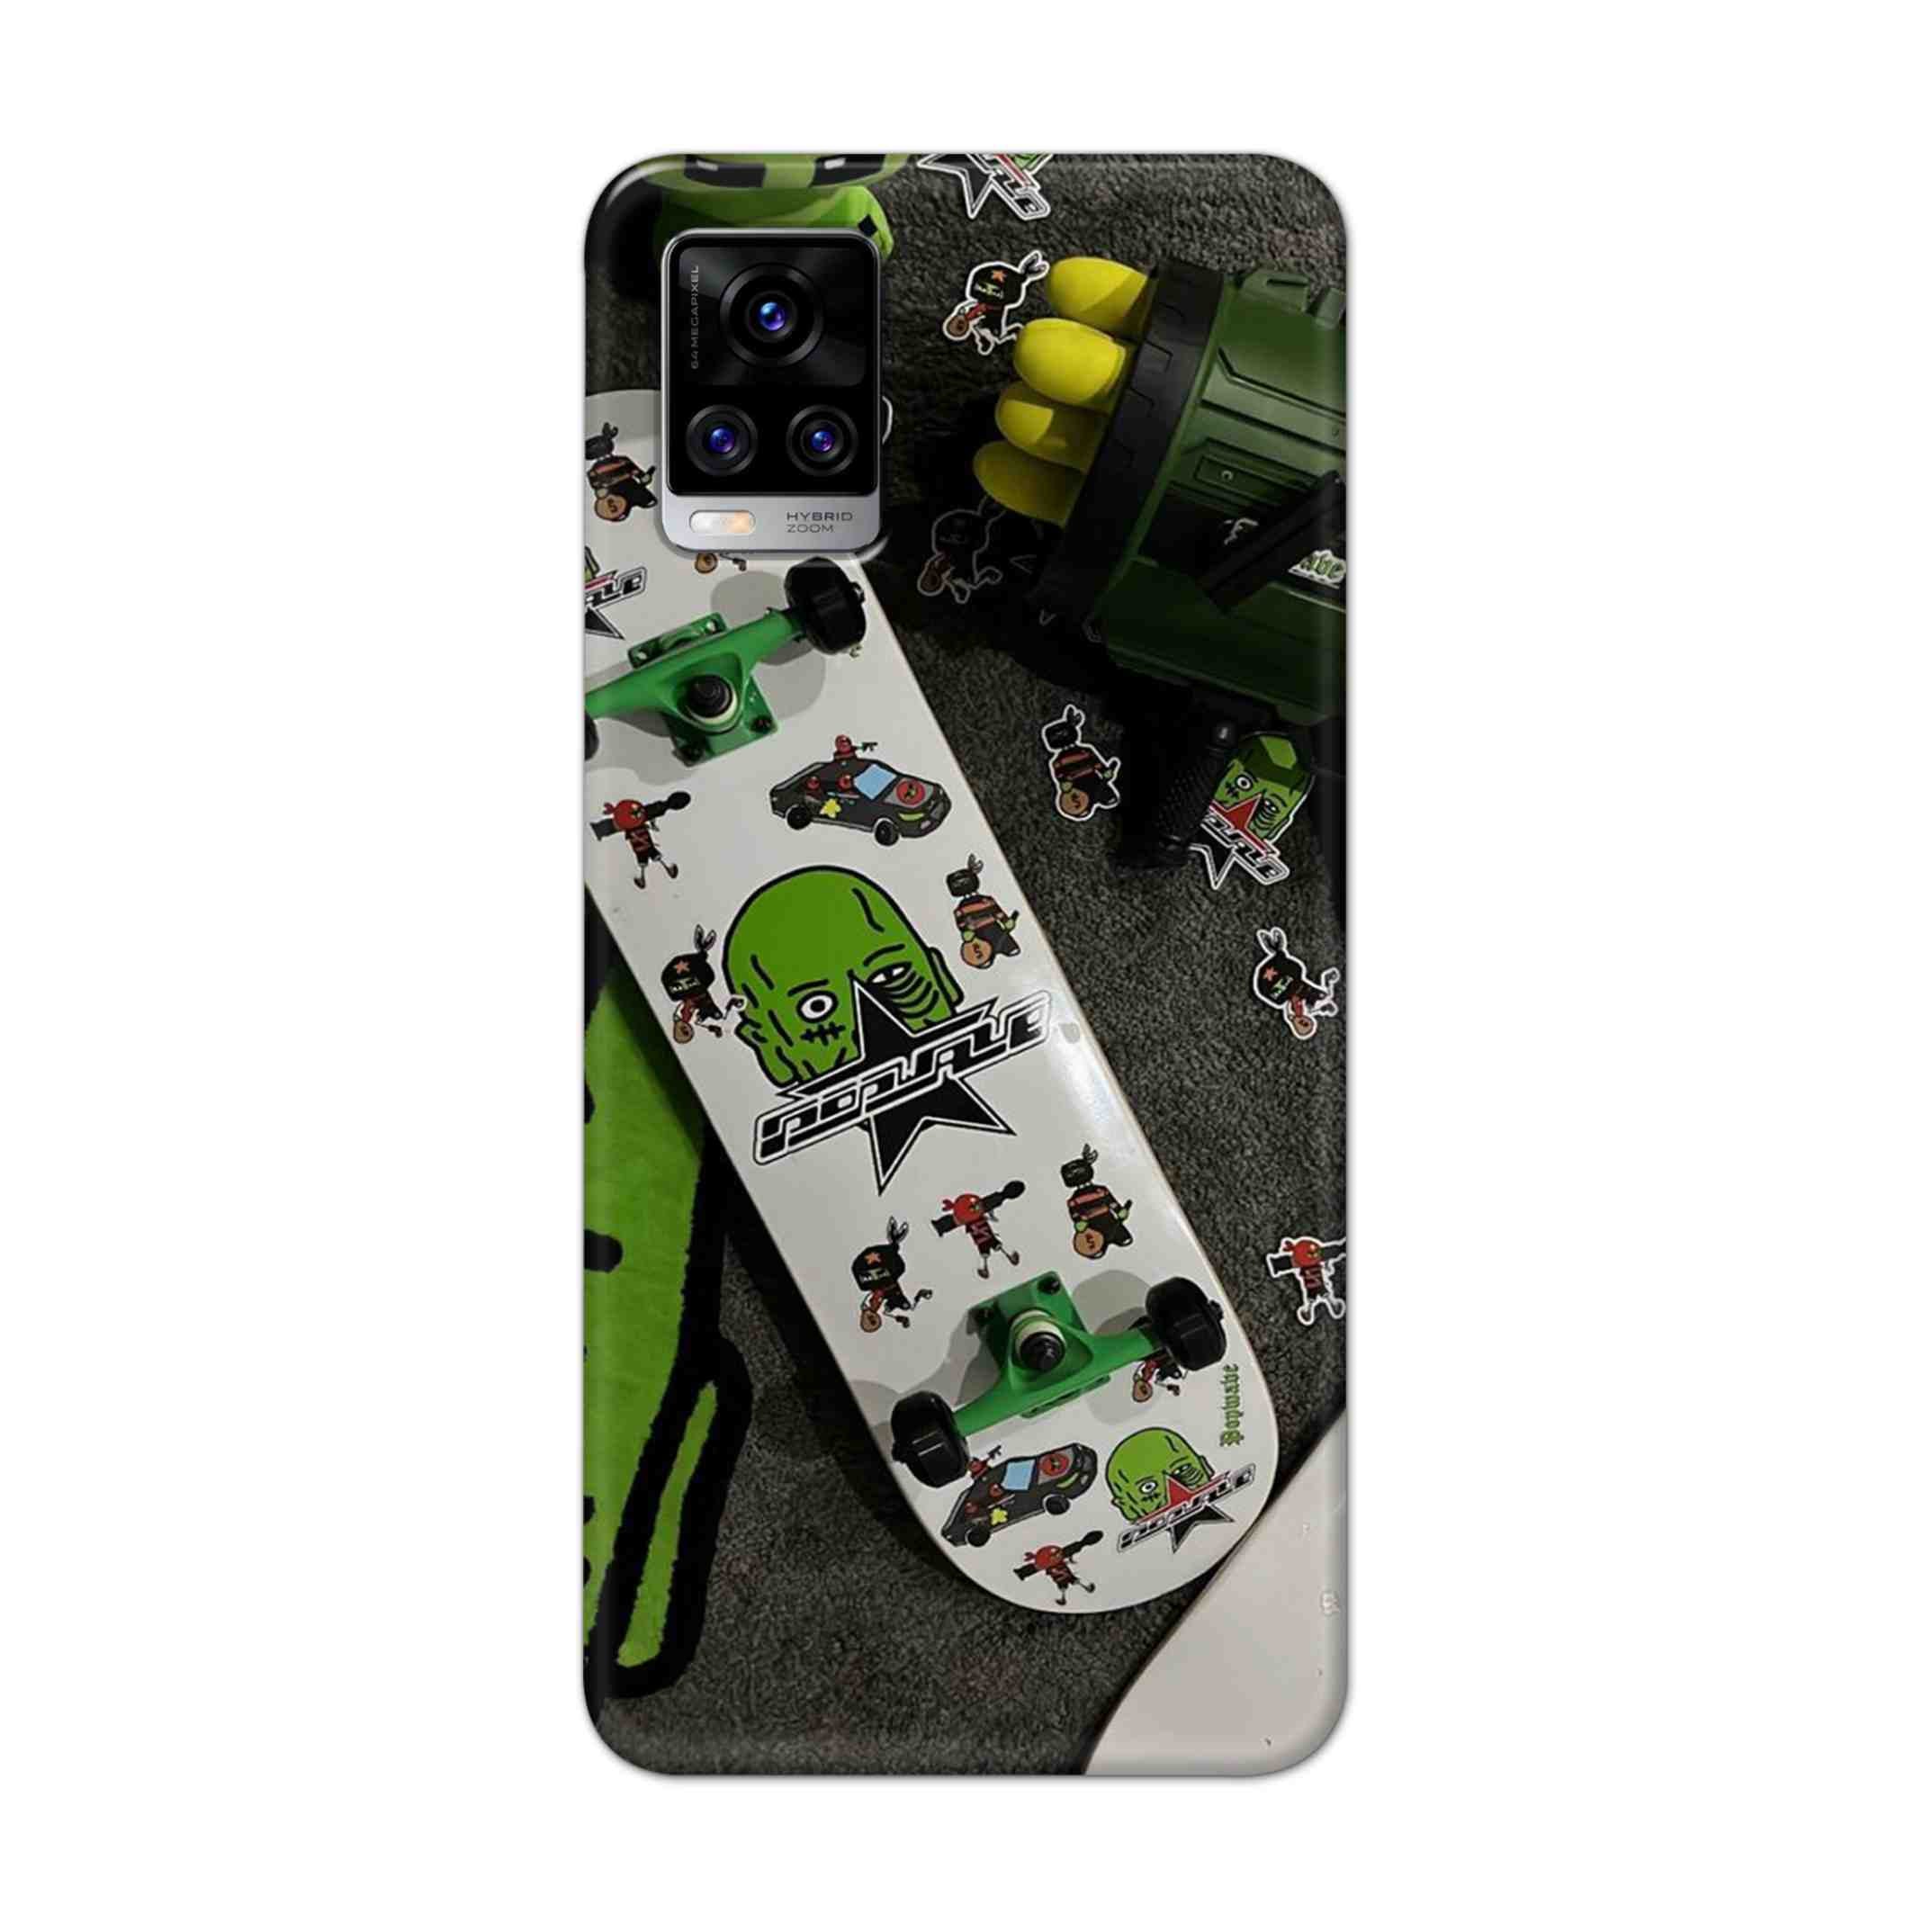 Buy Hulk Skateboard Hard Back Mobile Phone Case Cover For Vivo V20 Pro Online